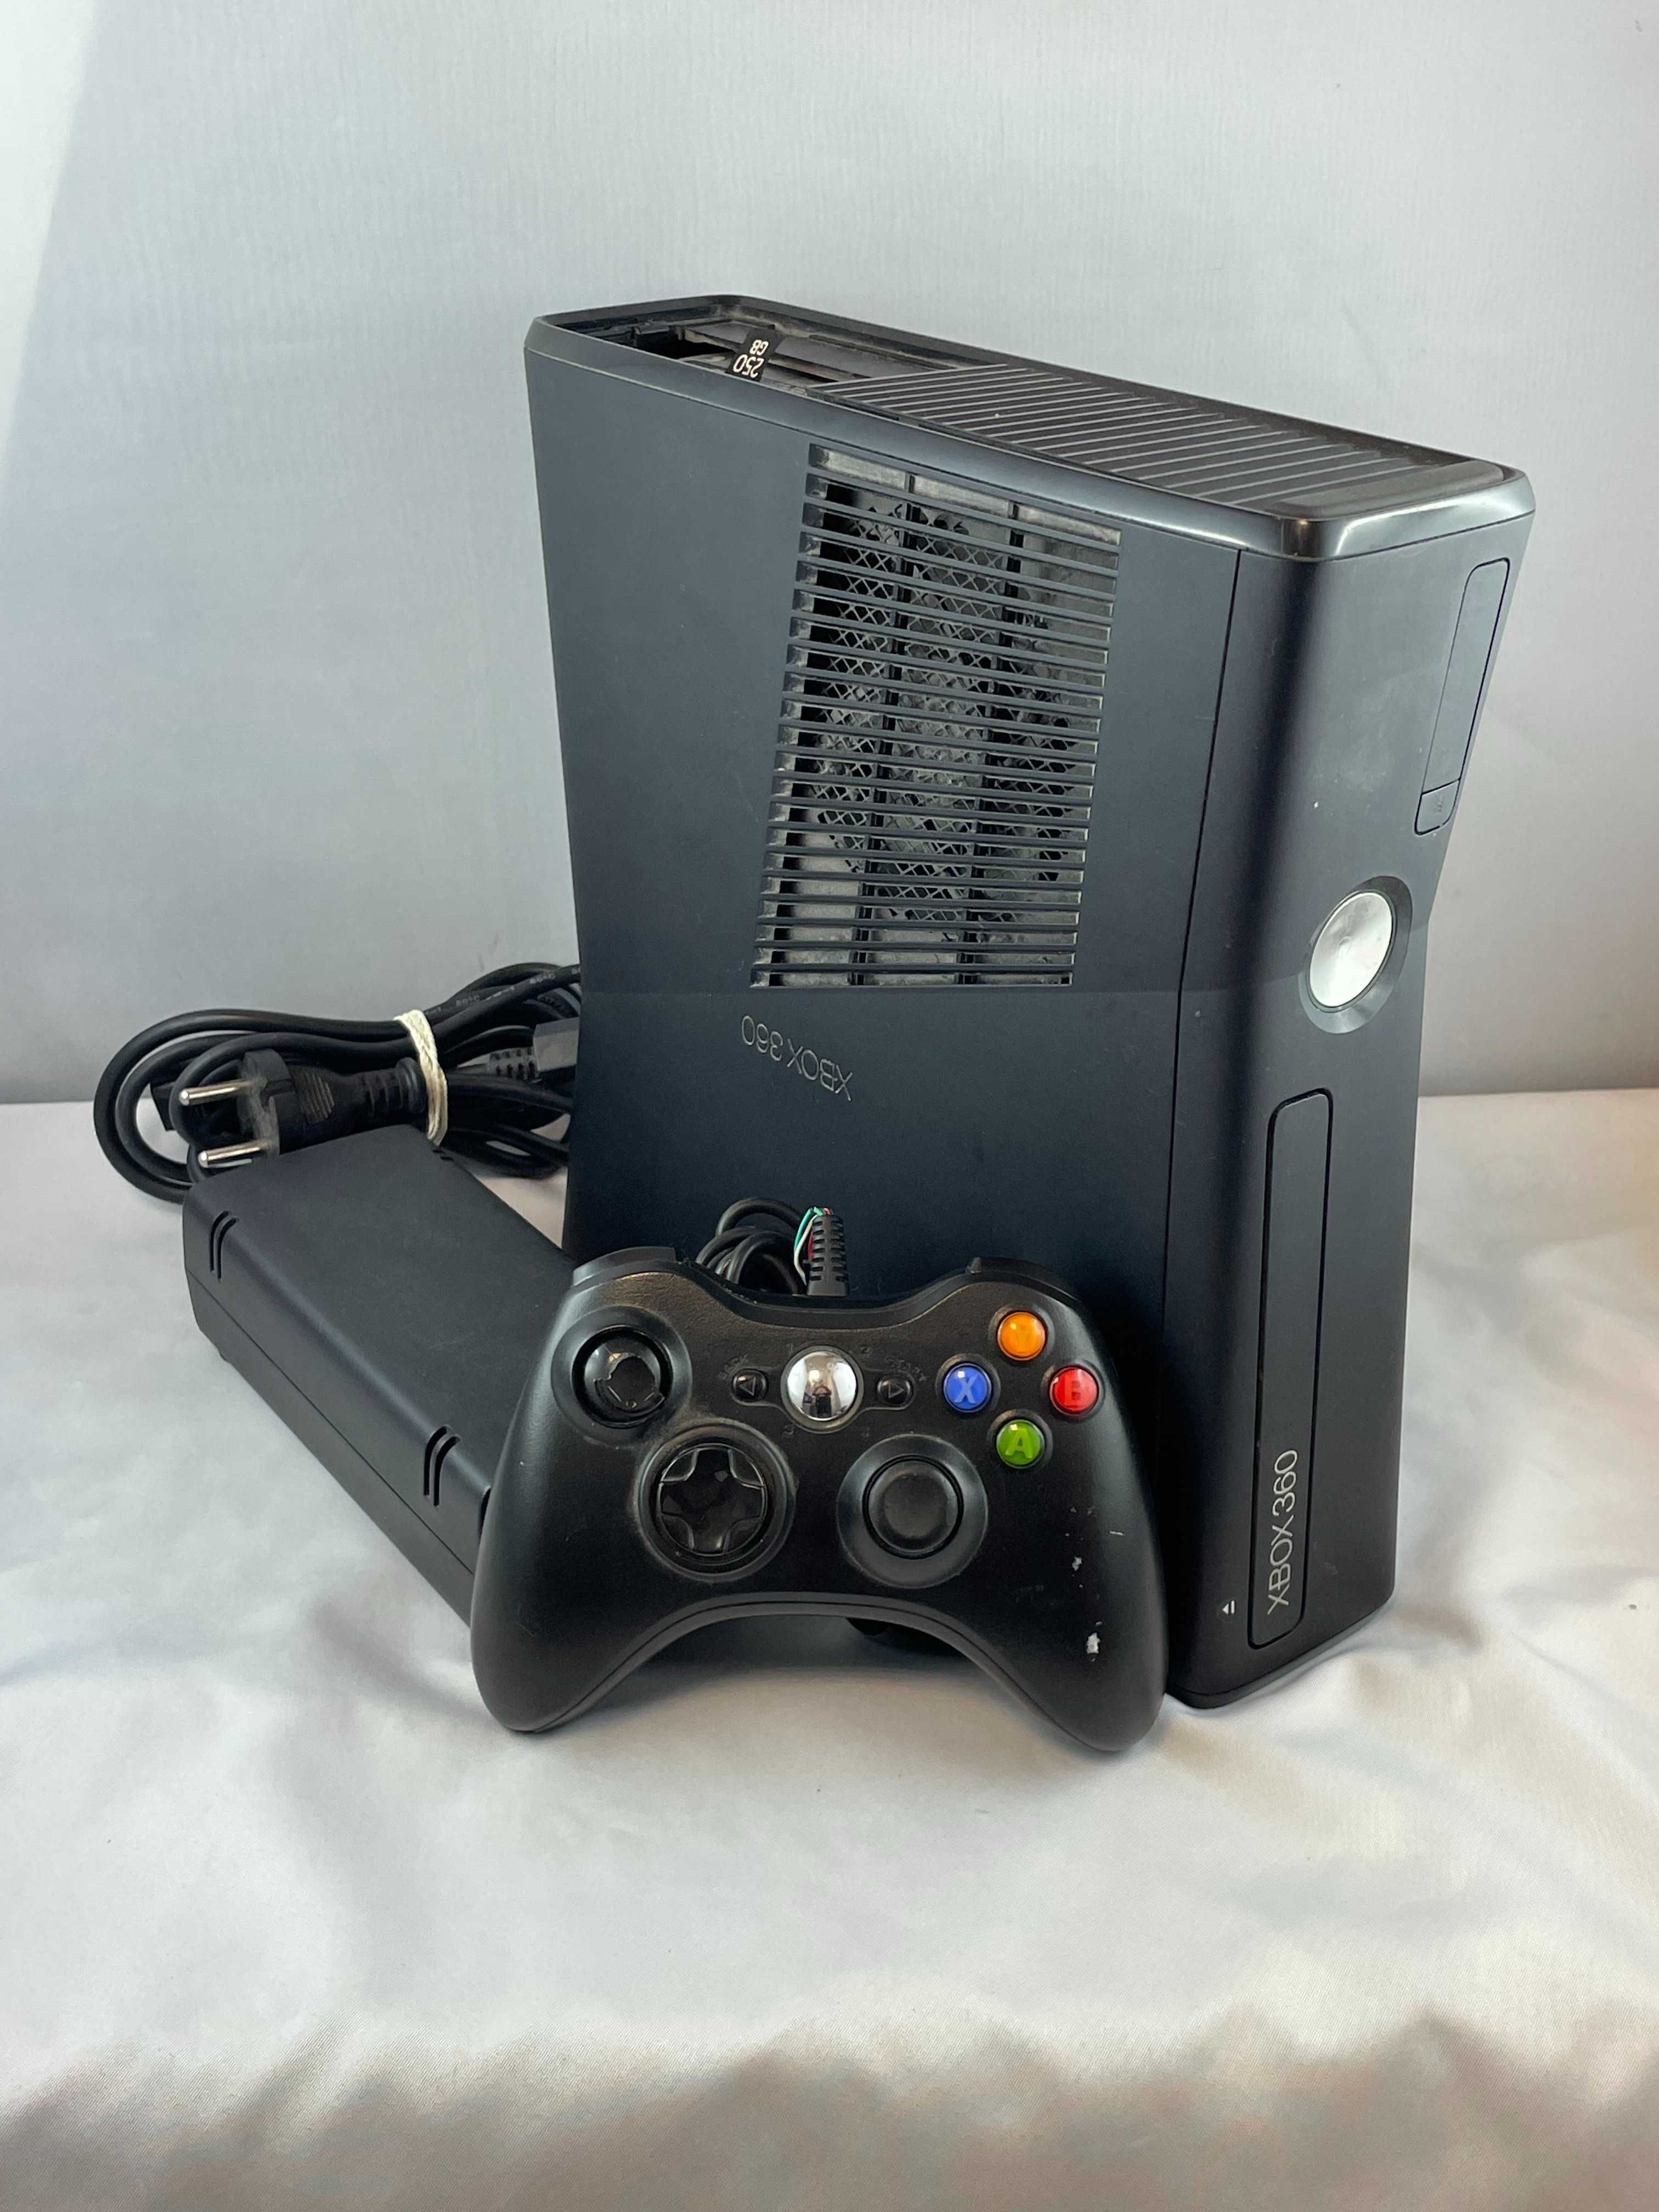 Konsola Microsoft Xbox 360 Slim 250 GB czarny